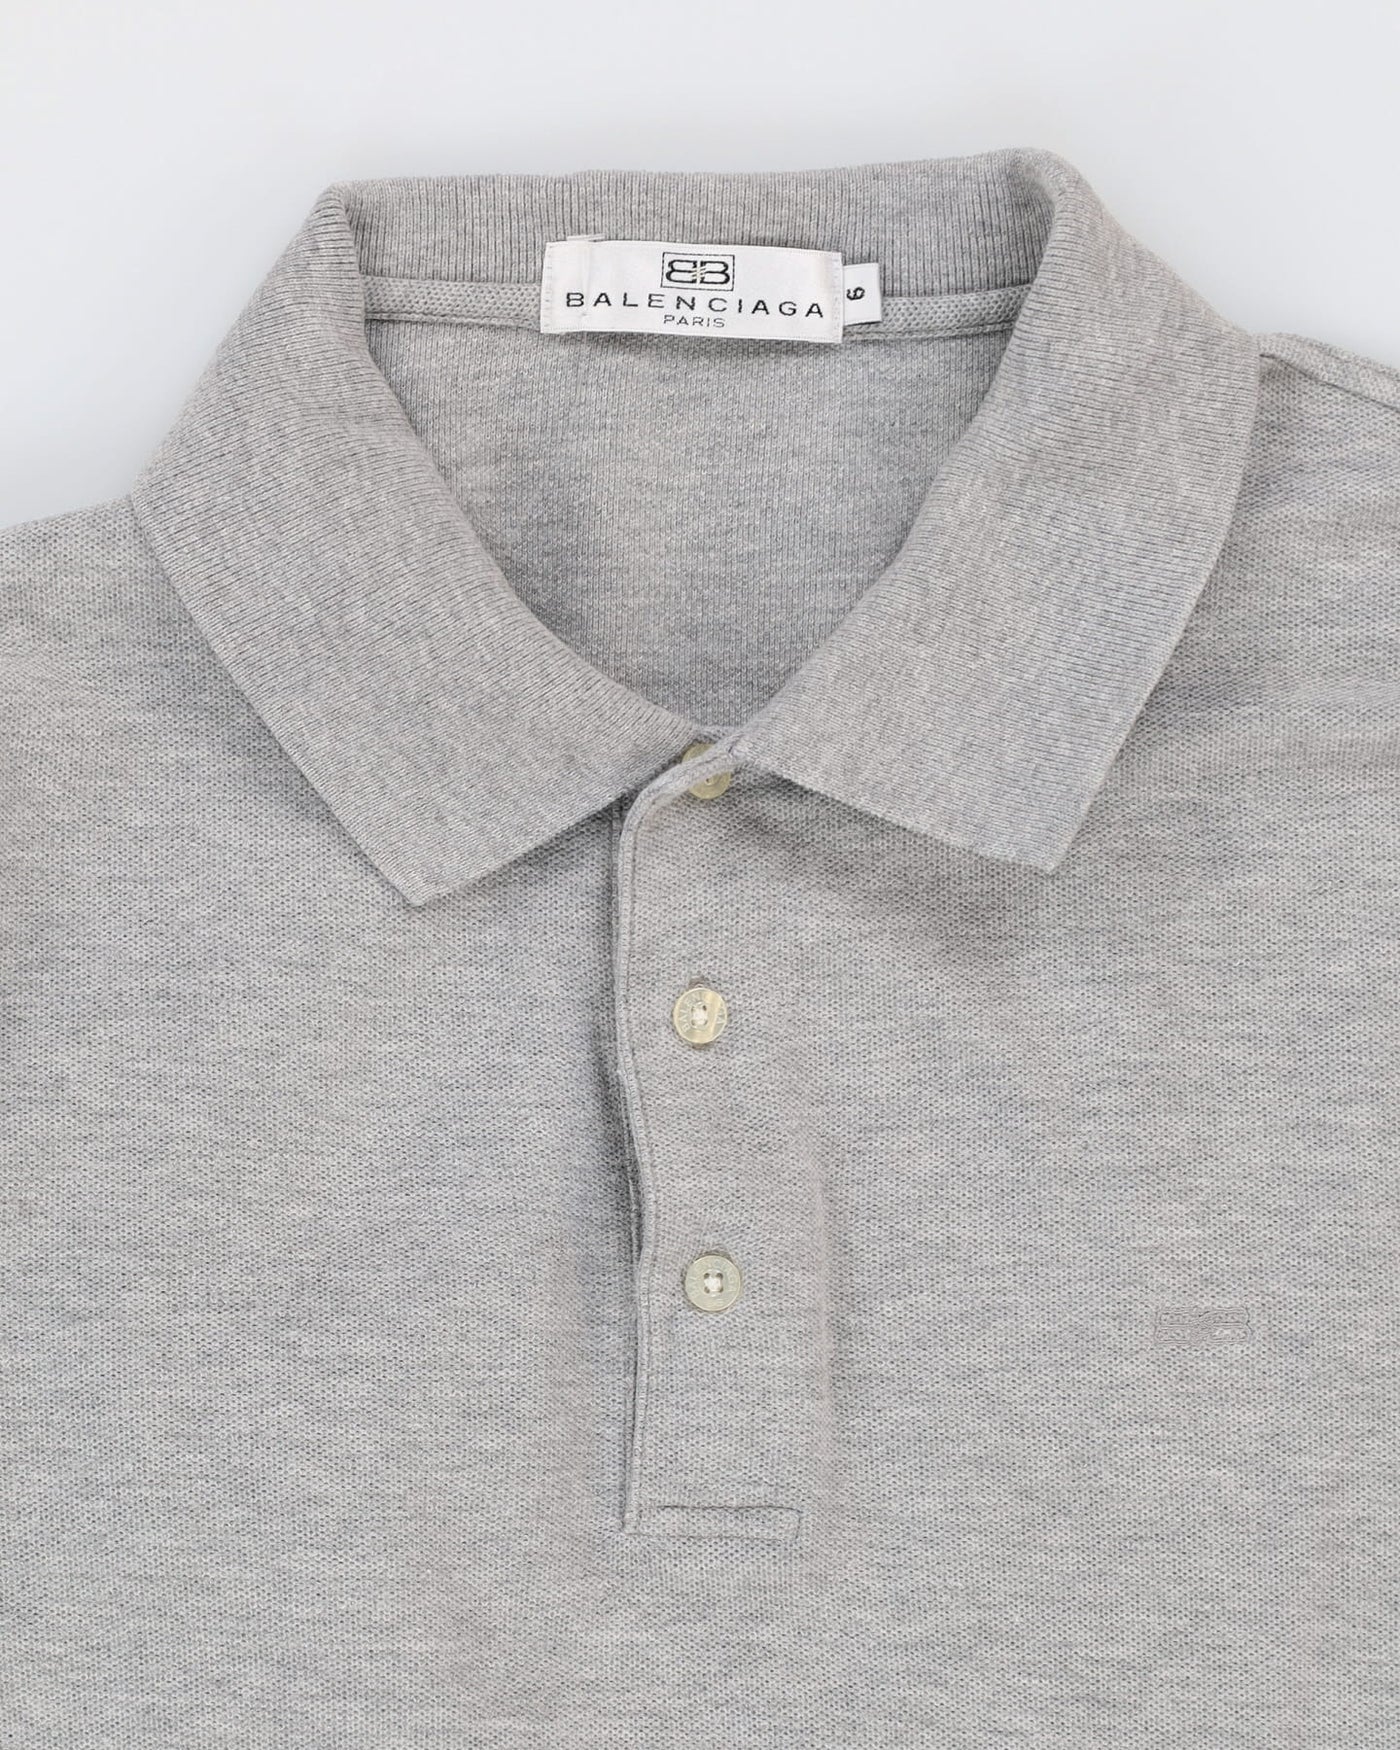 Balenciaga Grey Long Sleeve Polo Shirt - M